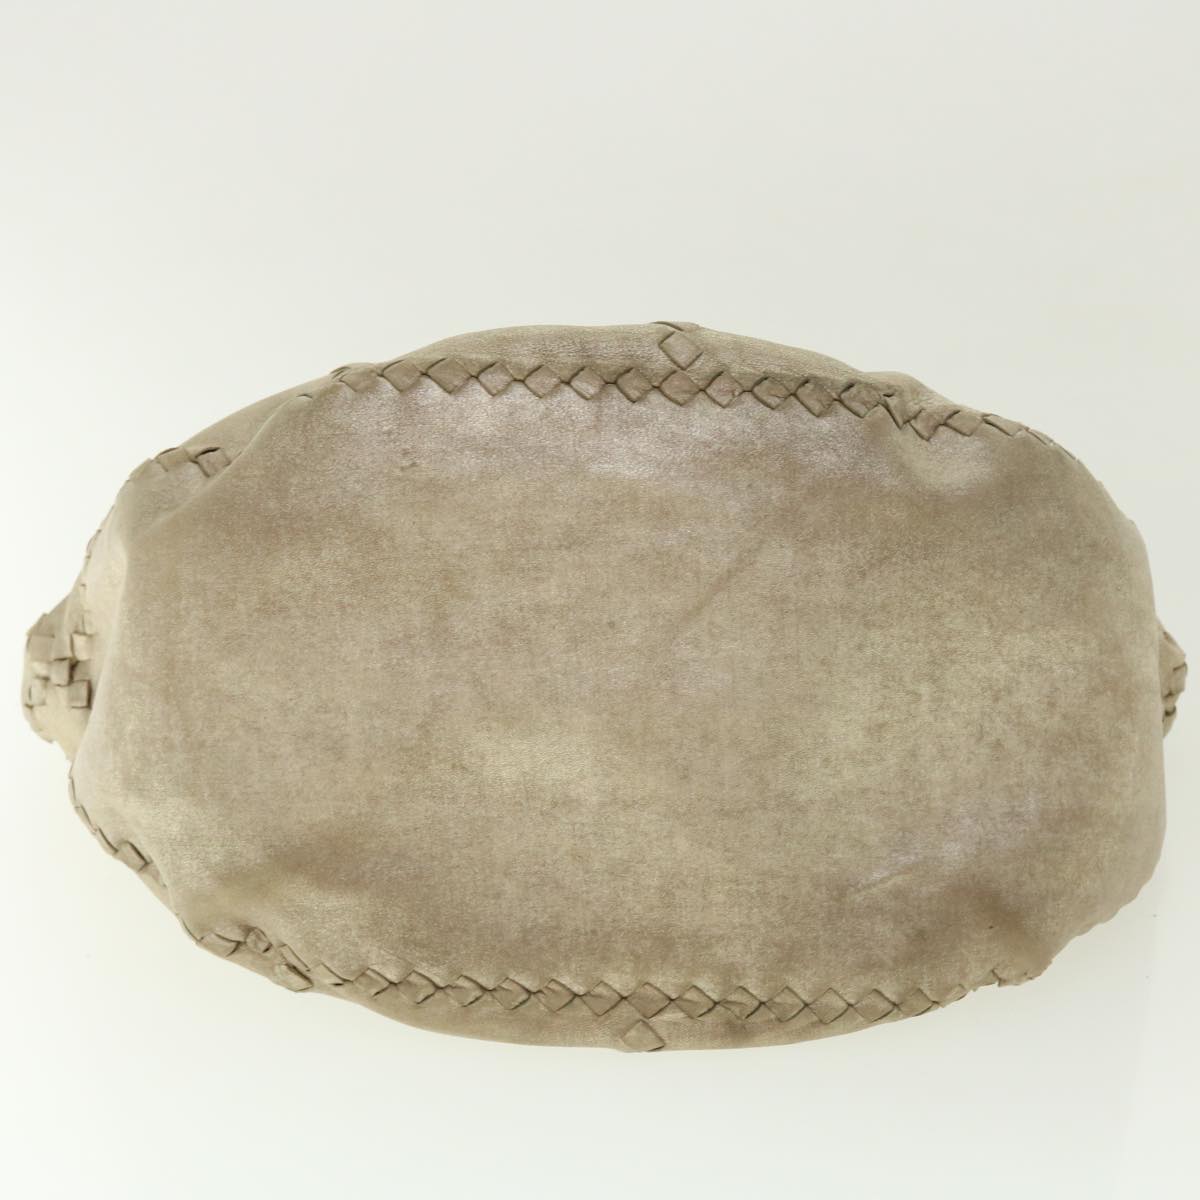 BOTTEGA VENETA INTRECCIATO Hand Bag Leather Gold Auth 49814